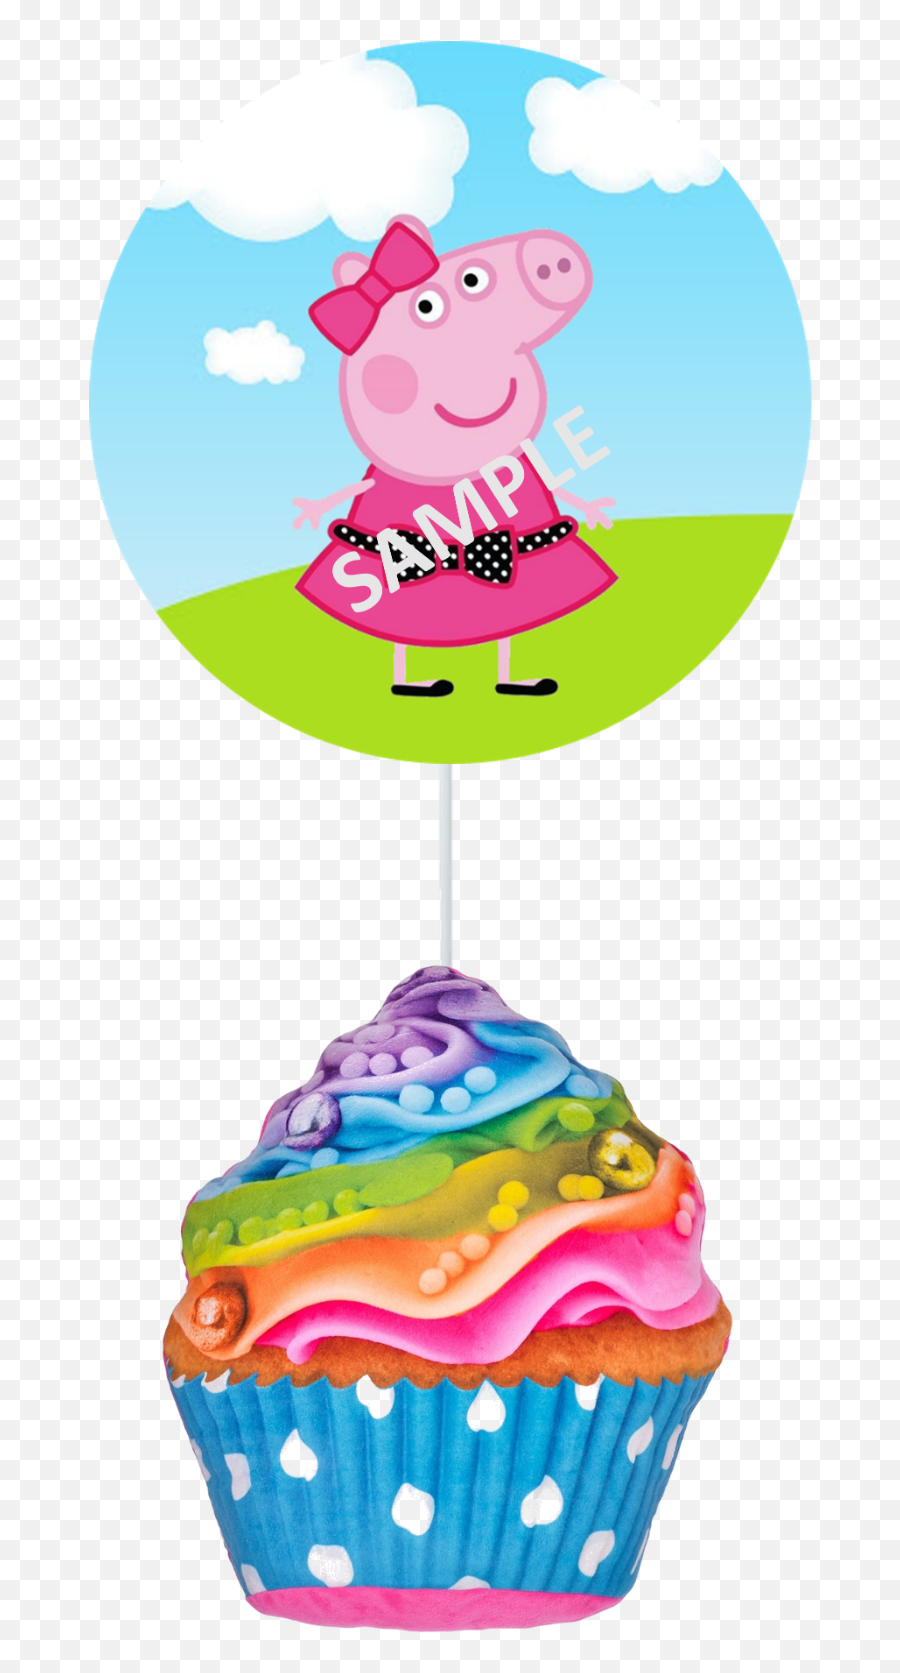 Peppa Pig Cupcake Toppers Rings Set Of - Cup Cake Emoji,Emoji Cupcakes Toppers